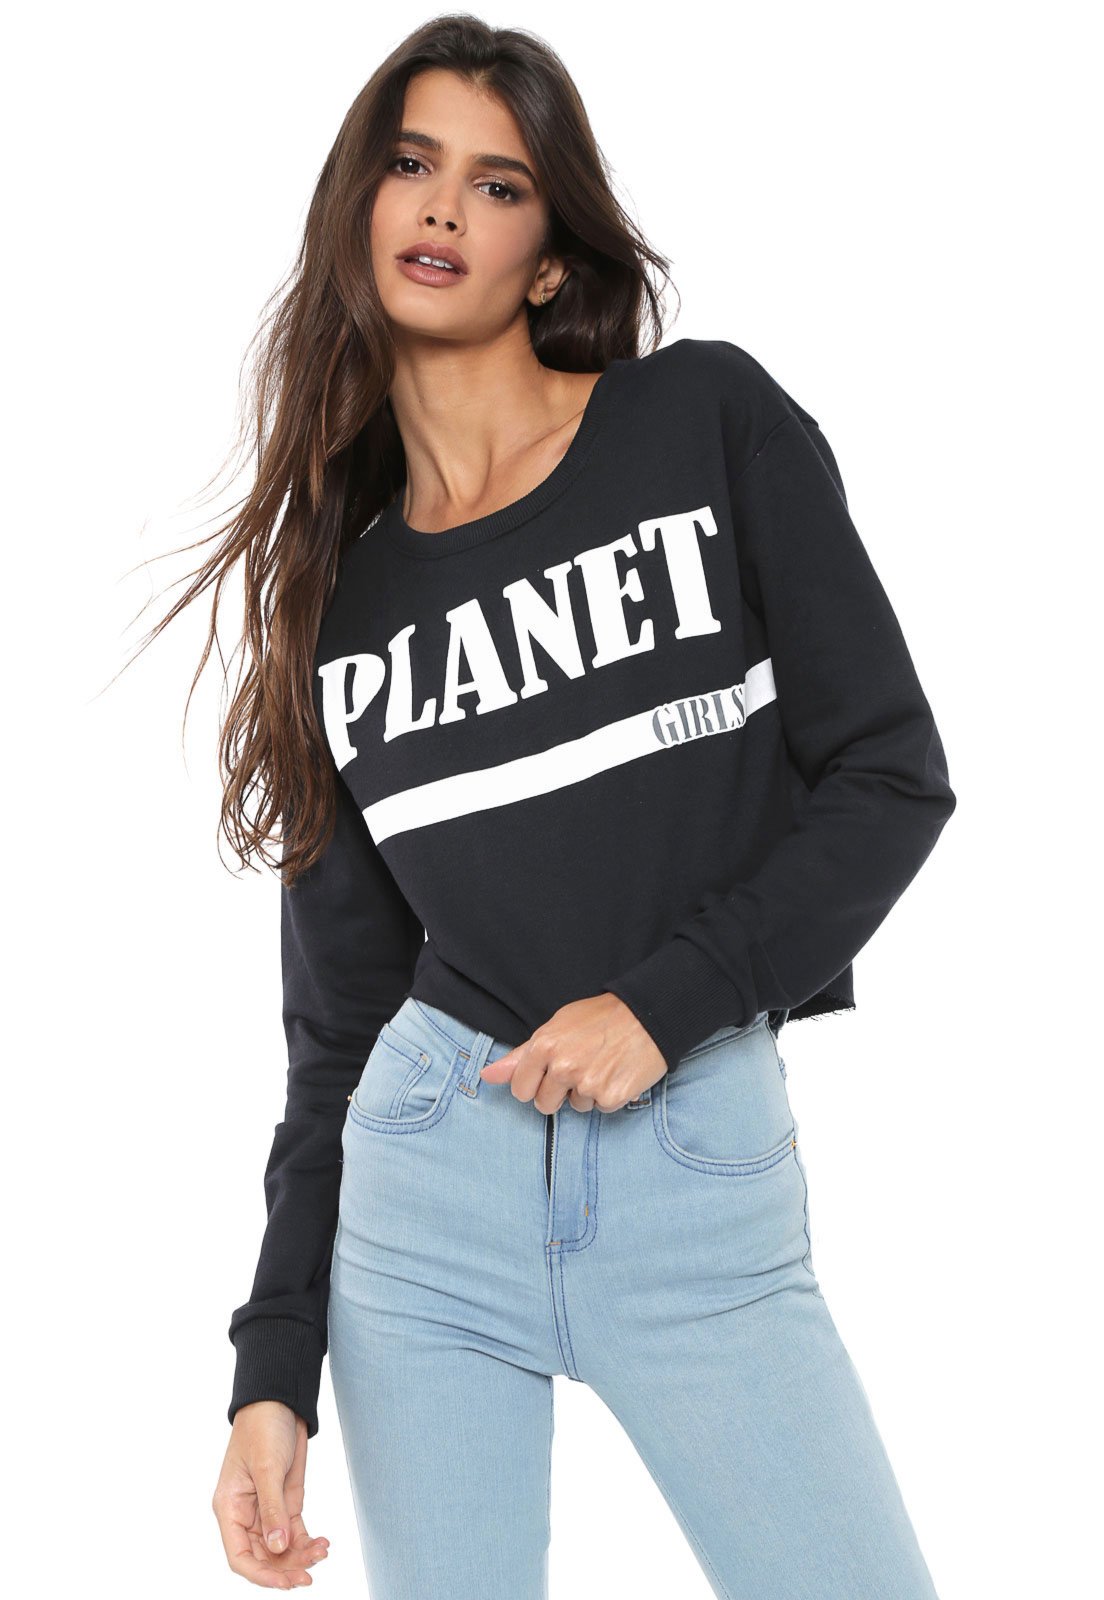 planet girl moletom 2019